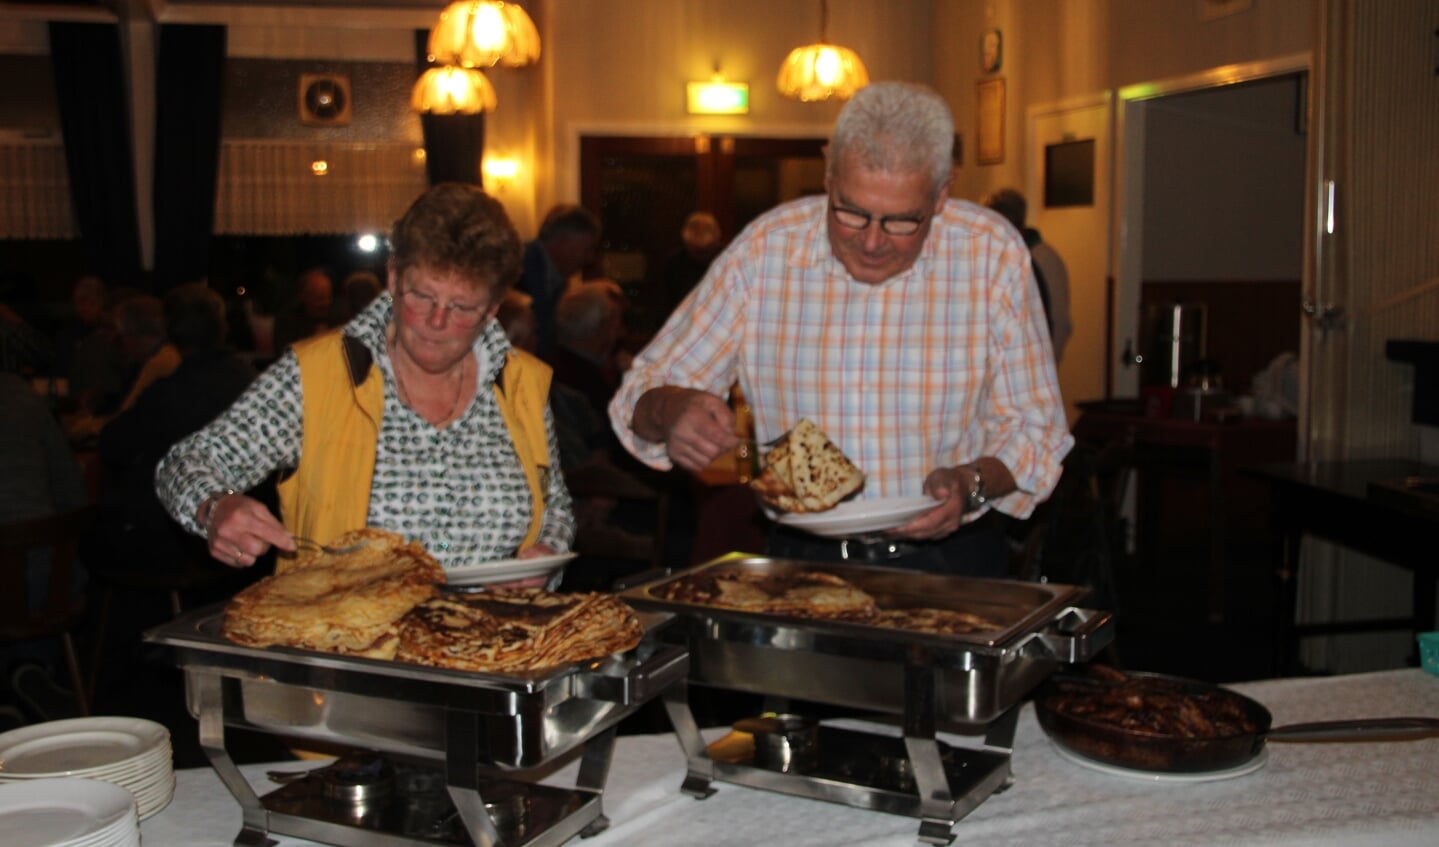 Sylvia Geerlings van de Bloemencommissie van Vereeniging Volksfeest opende het pannenkoekenbuffet samen met Jan Bent, ‘chef’ van de dahliagroep. Foto: Lydia ter Welle